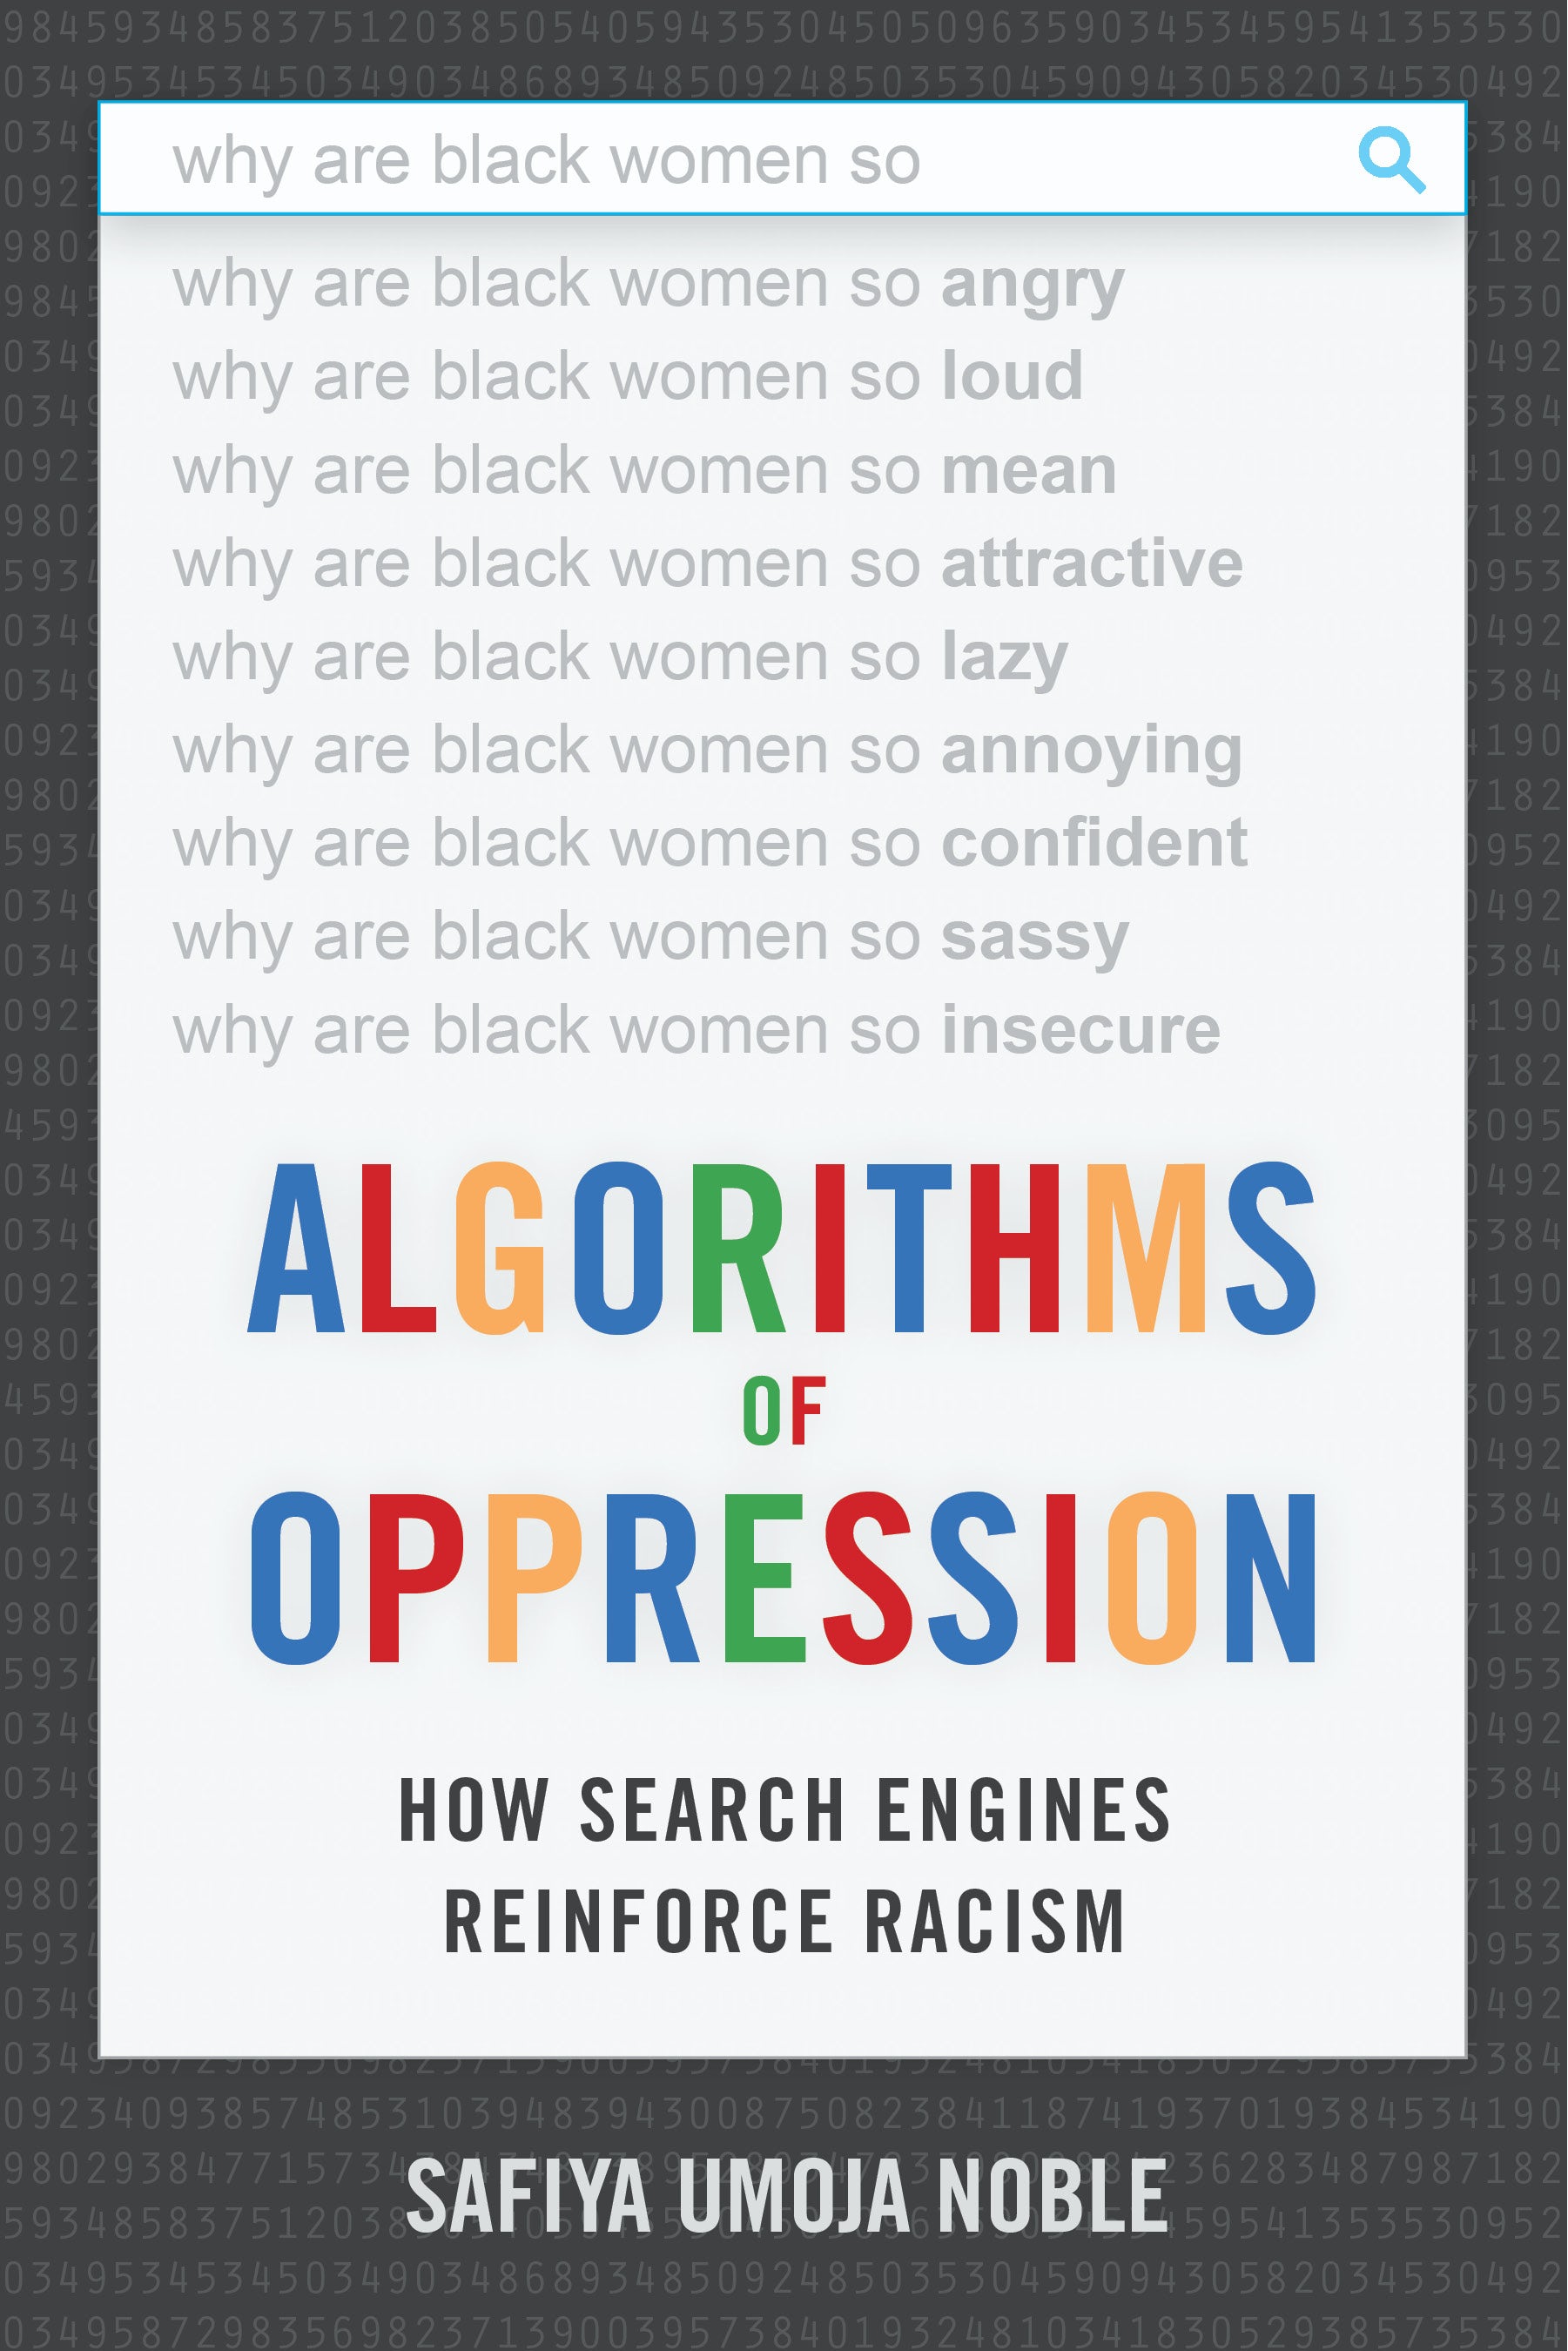 Safiya Umoja Noble: Algorithms of Oppression (Paperback, 2018, NYU Press)